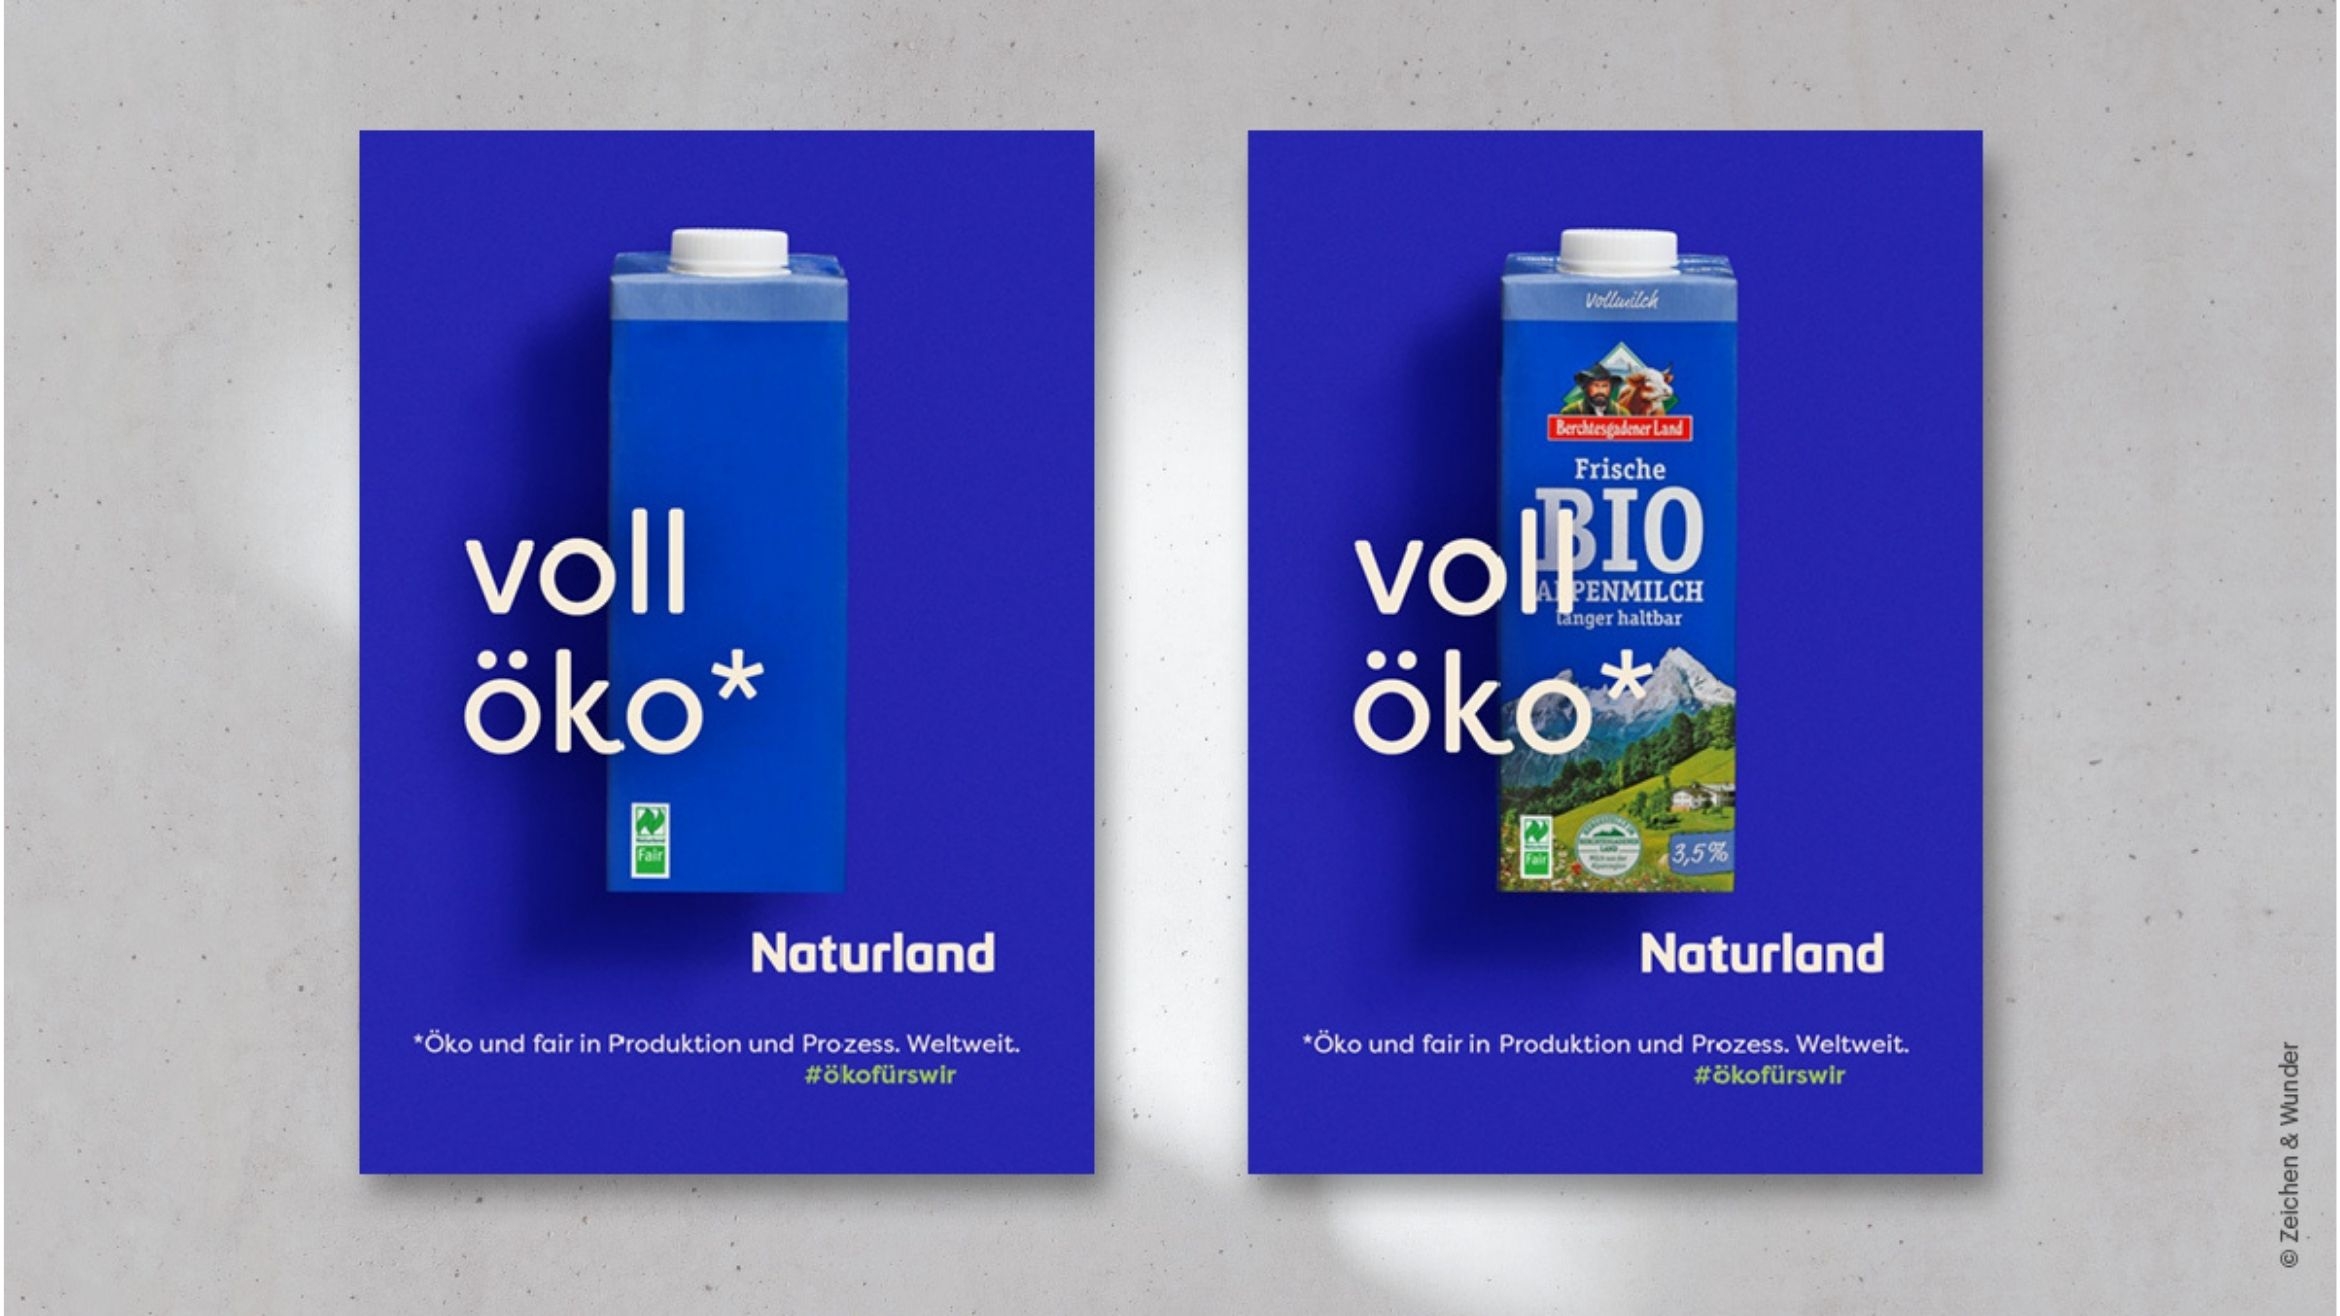 Milchwerke Berchtesgadener Land ist einer der Partner für die Kampagne – 